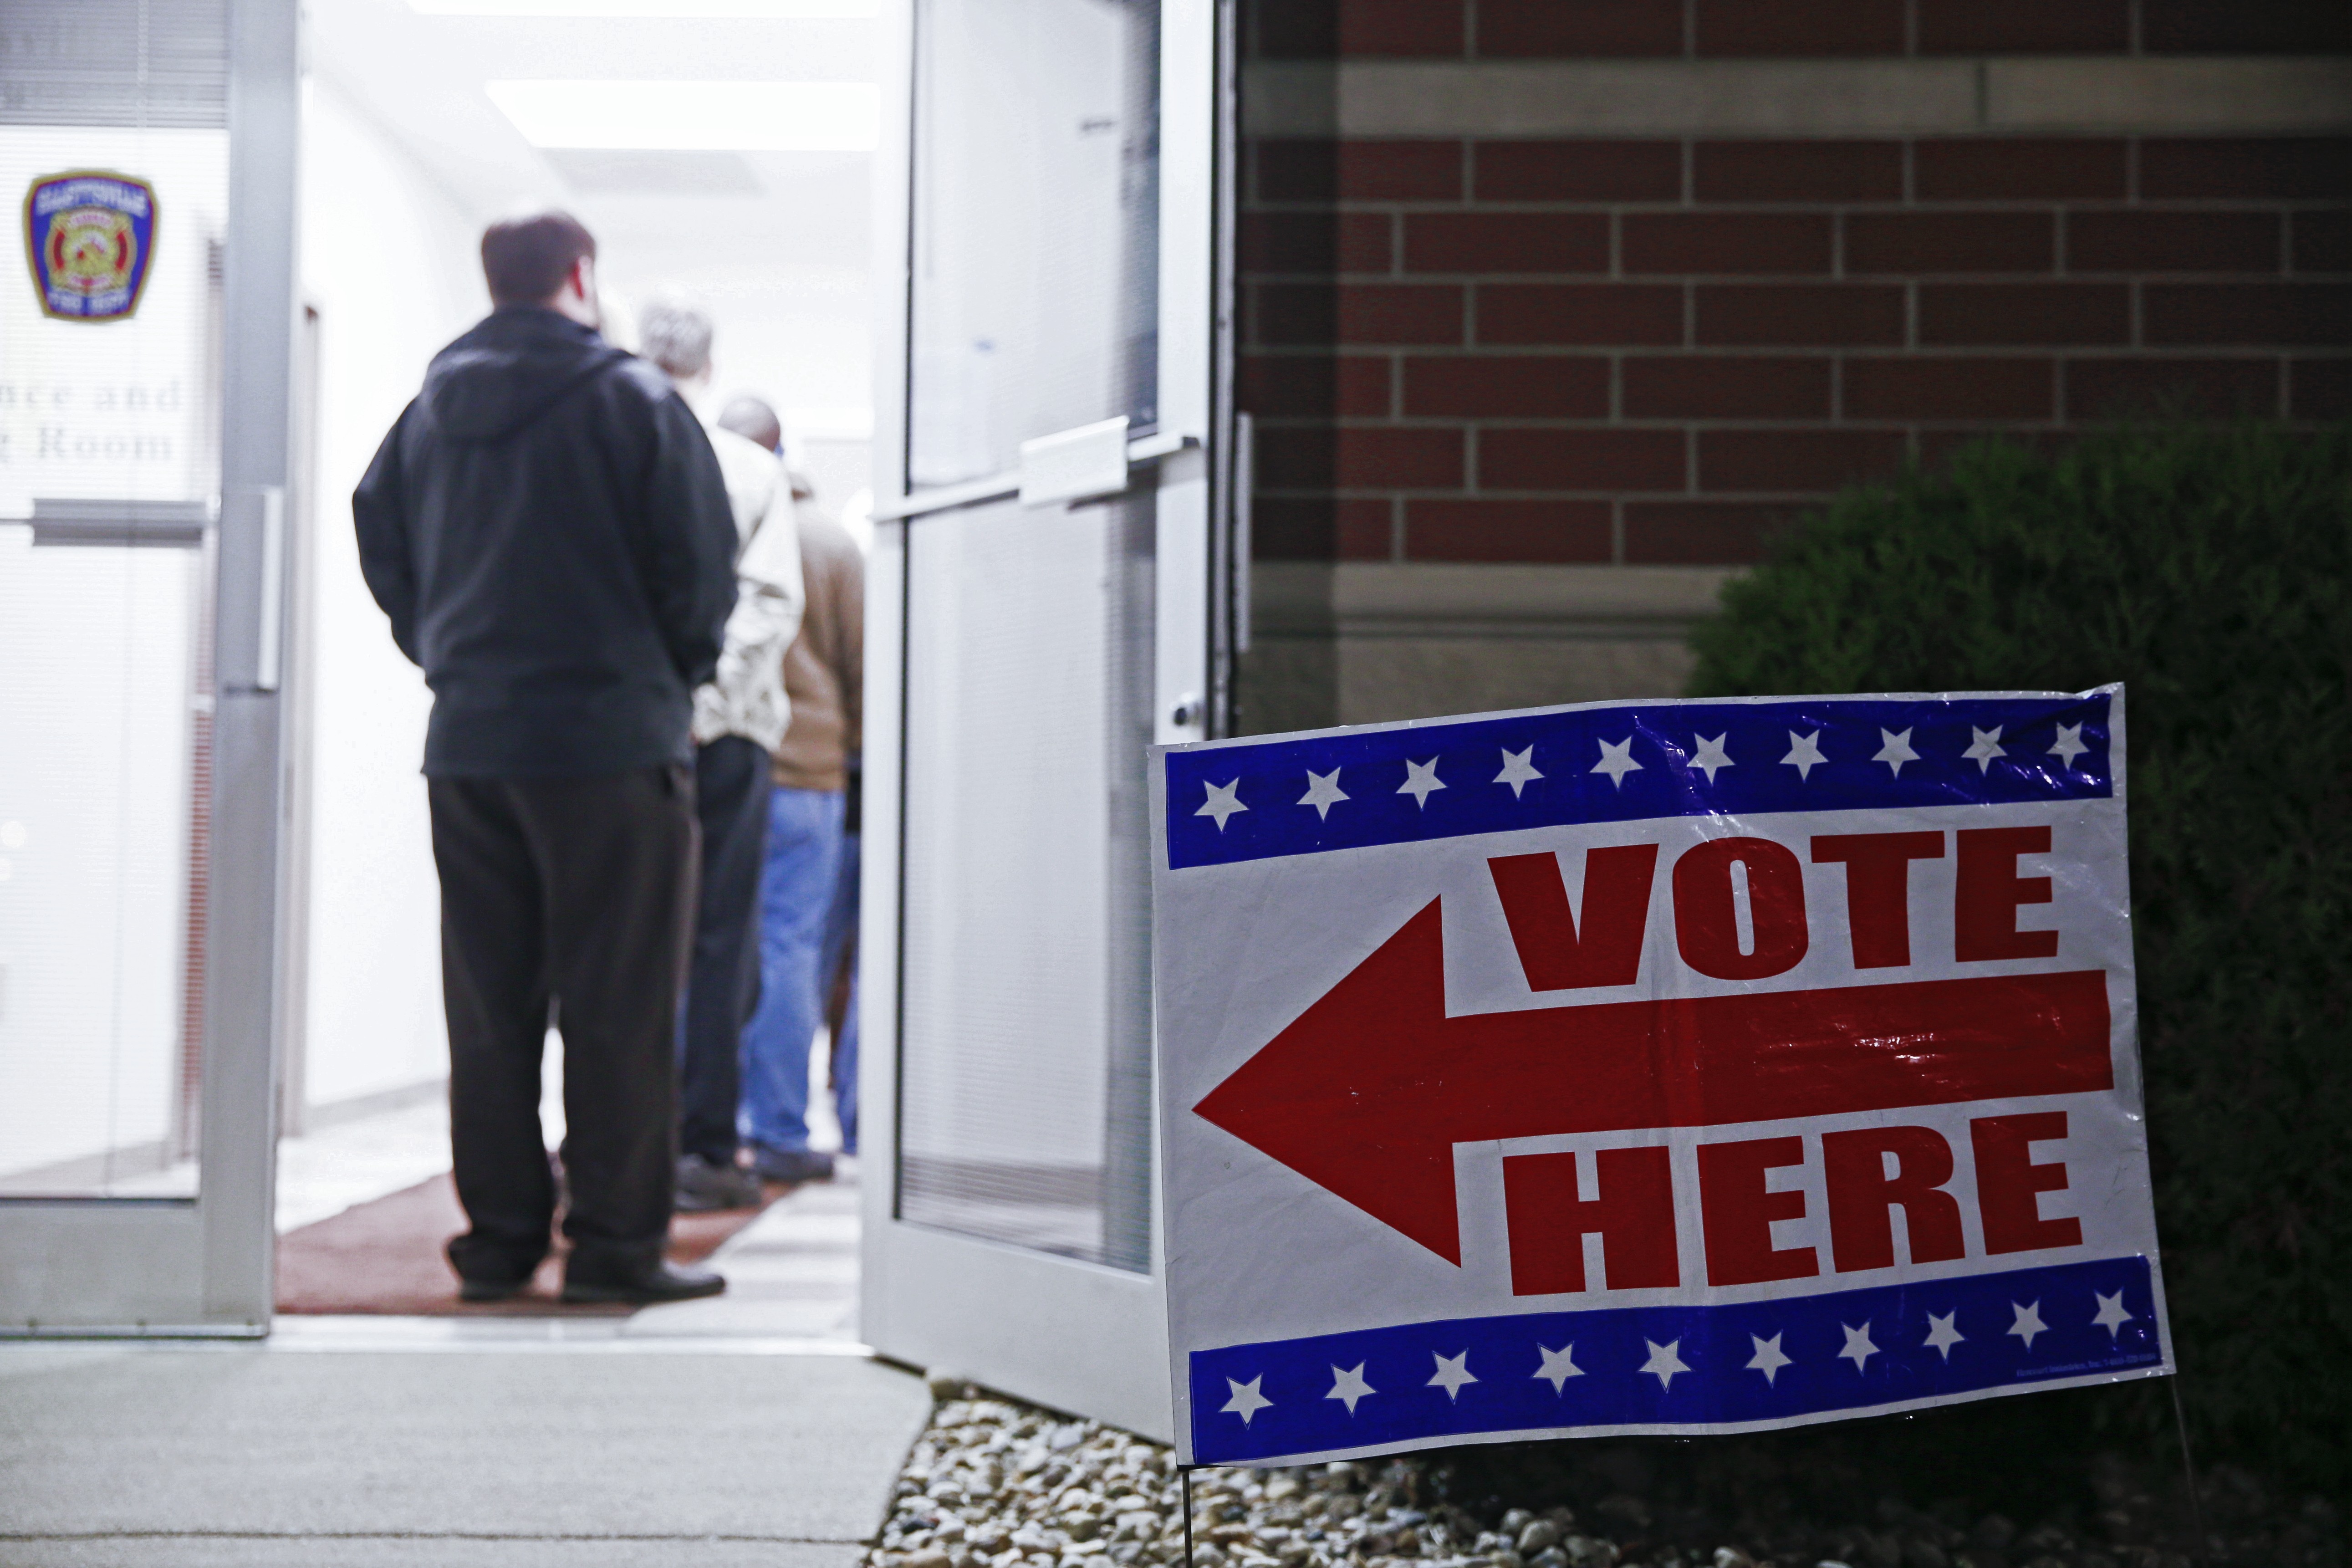 "Голосовать здесь" - указатель около избирательного участка во время выборов президента США.&nbsp;Фото &copy; РИА Новости